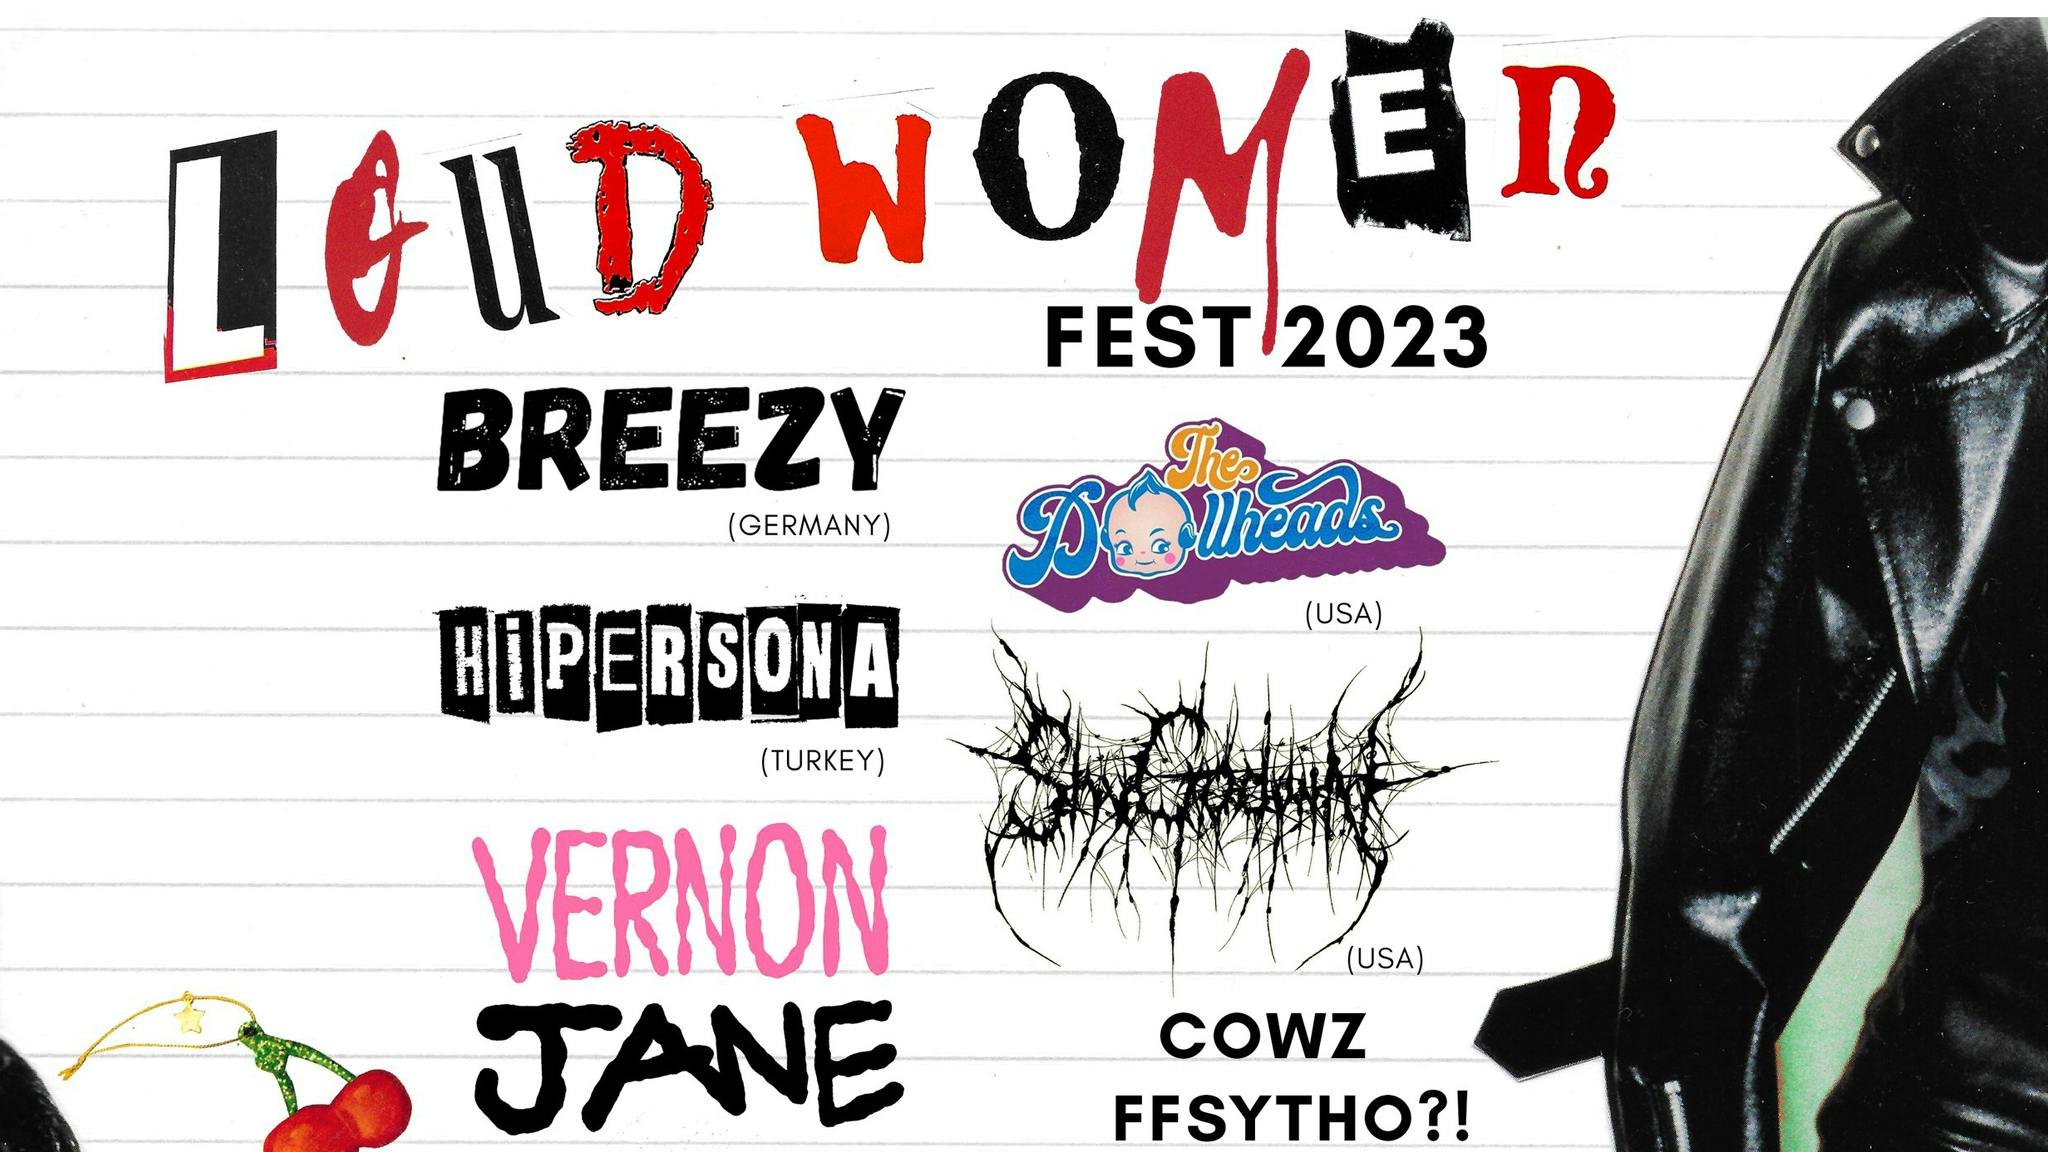 Here’s the full line-up for LOUD WOMEN Fest 2023